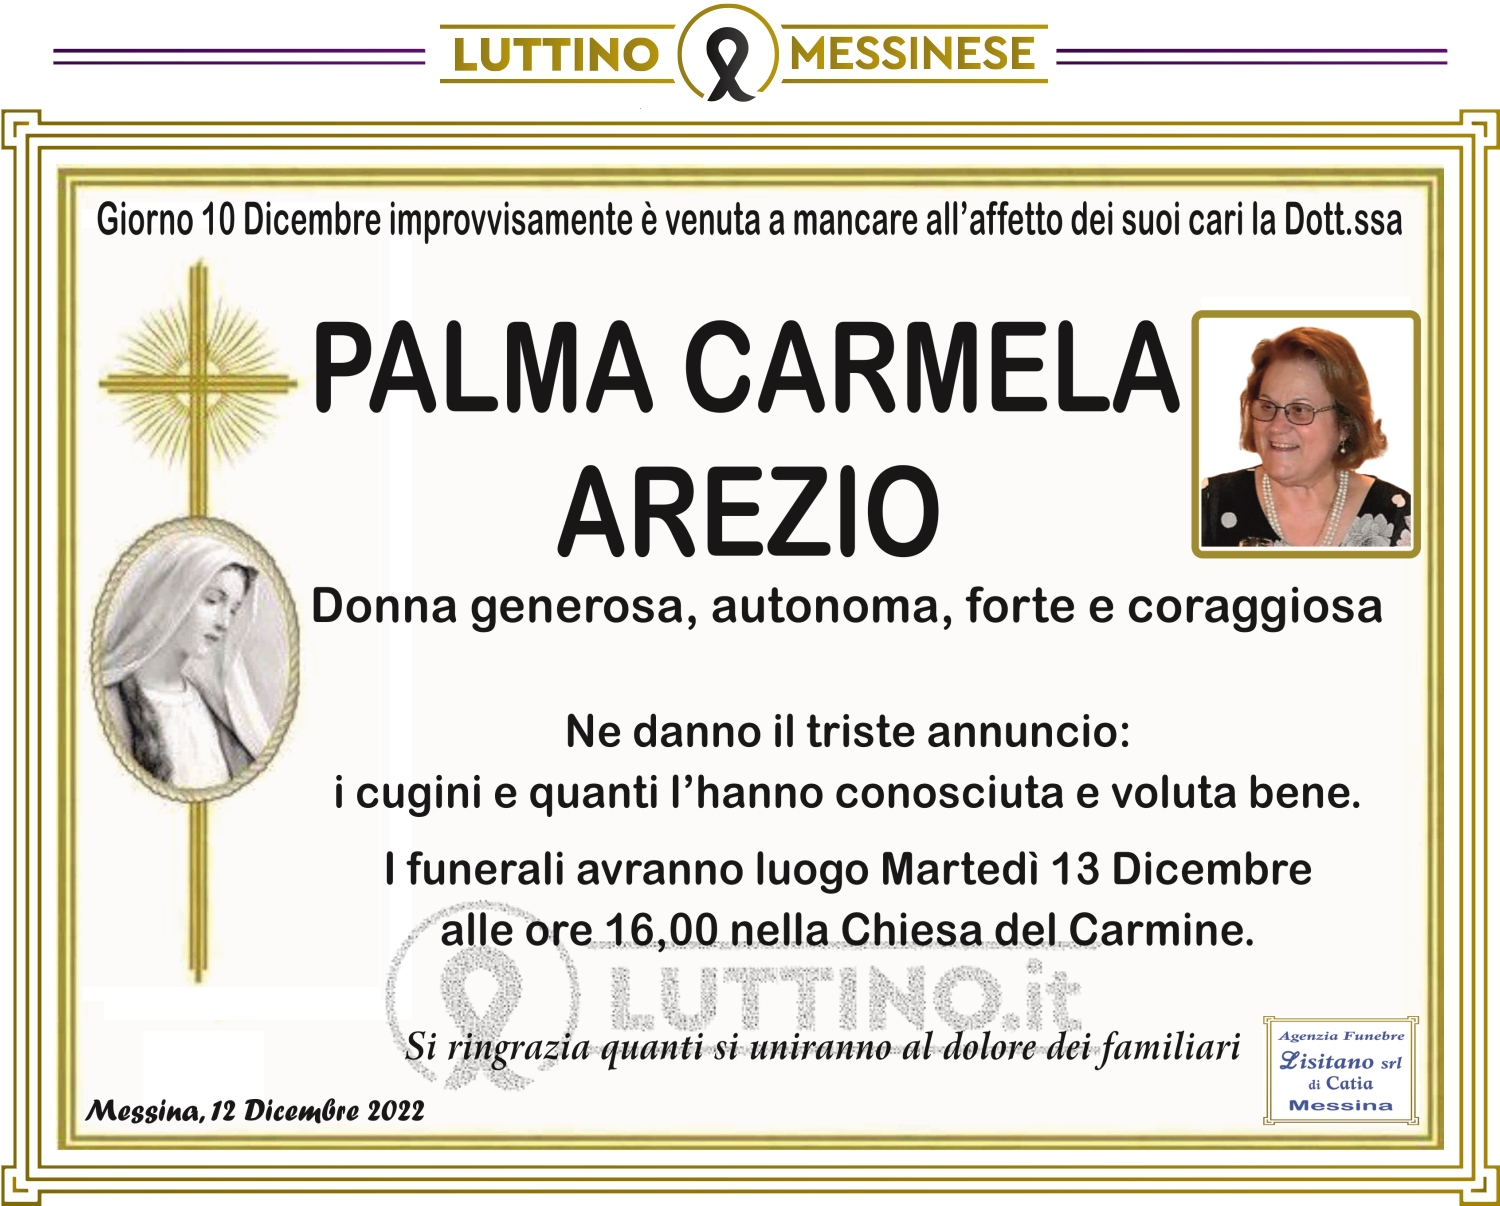 Palma Carmela Arezio